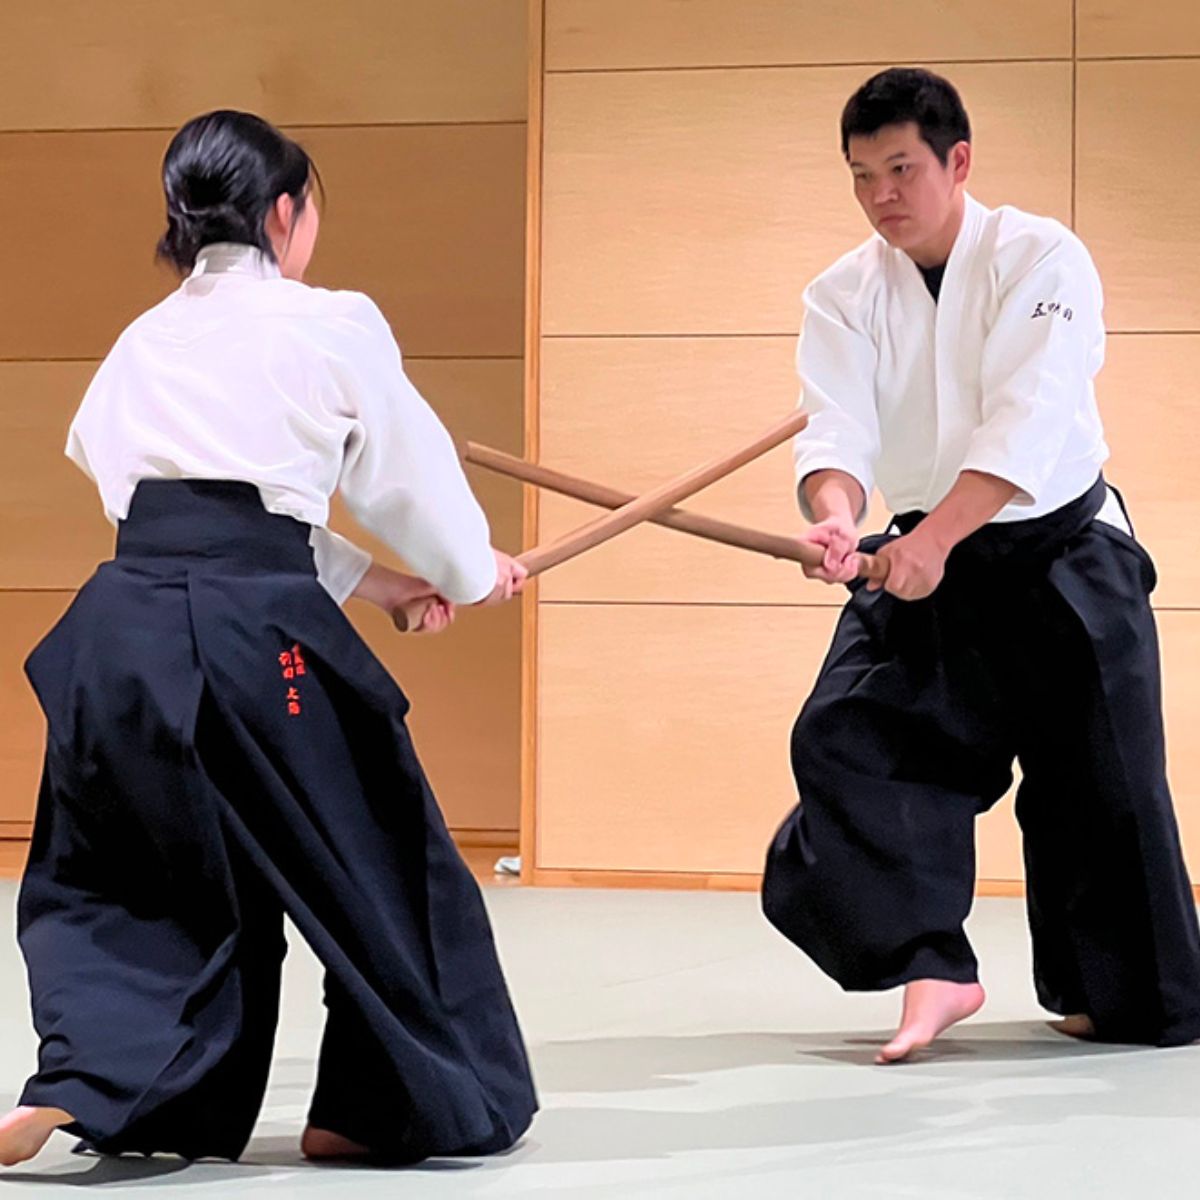 Võ phục aikido được làm từ chất liệu cotton